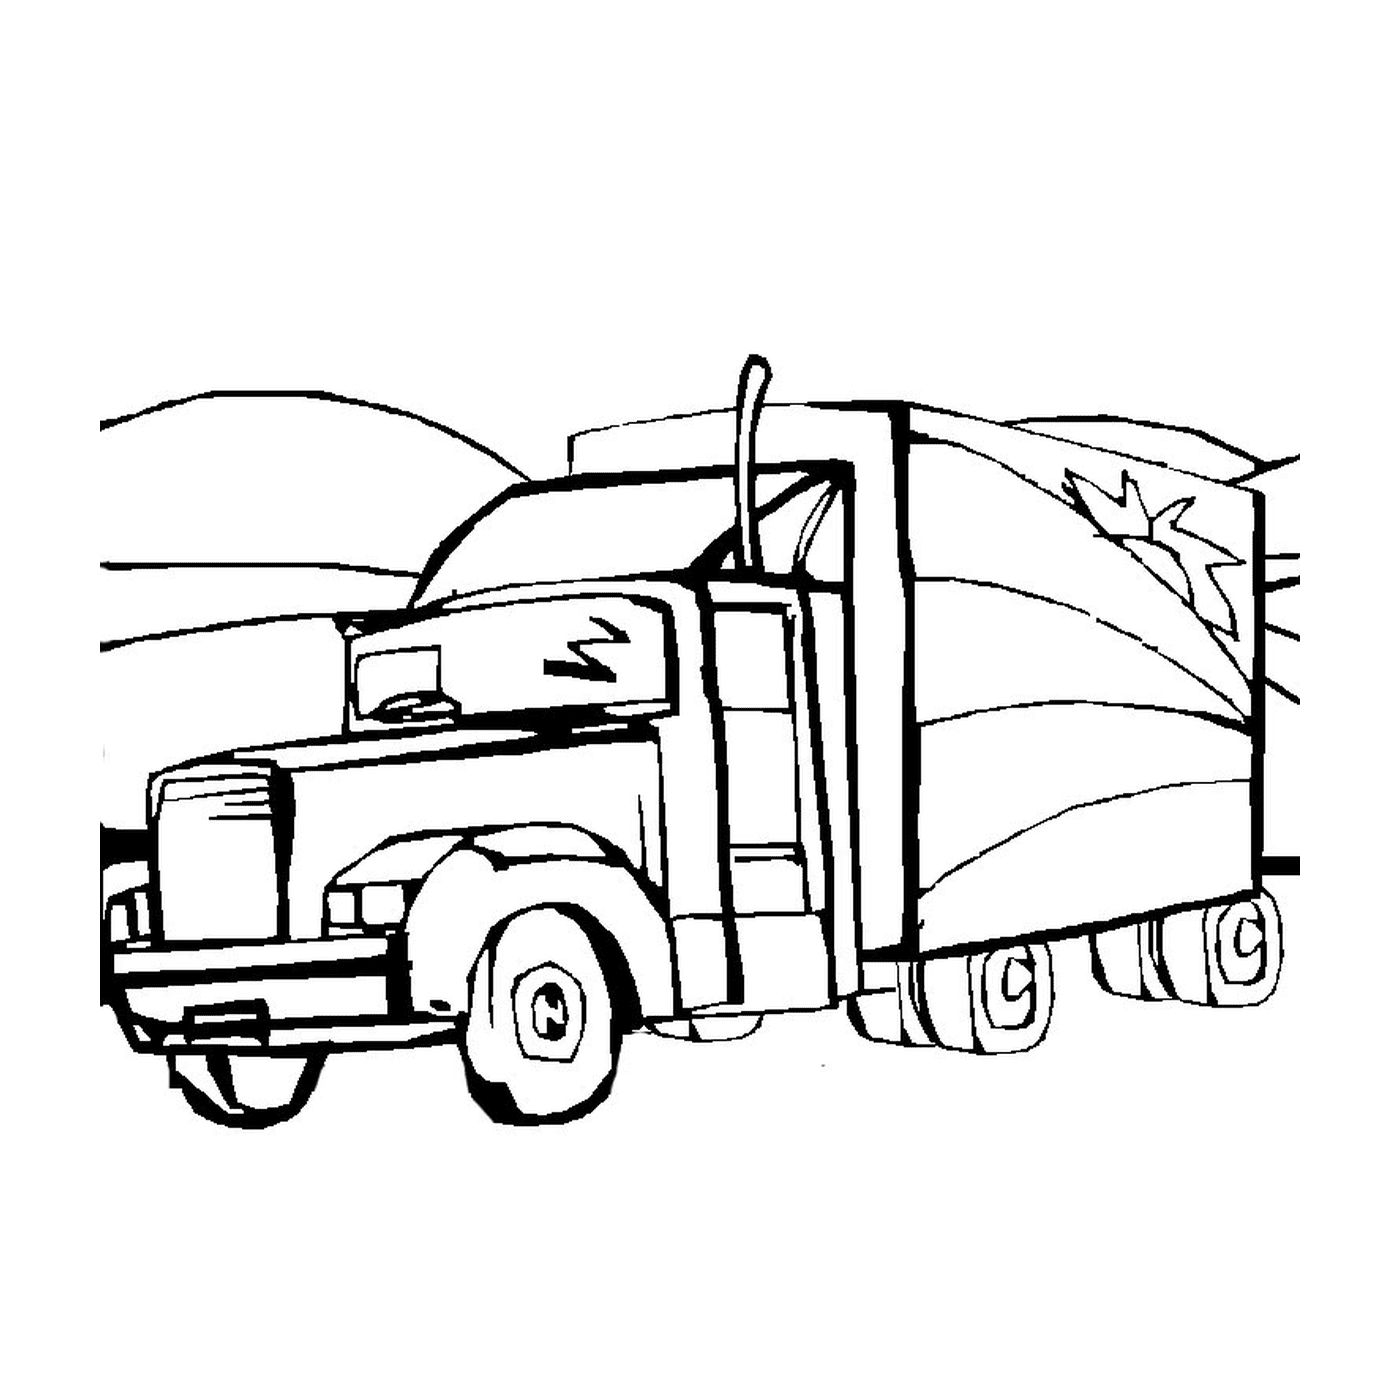  Un camion rimorchio 